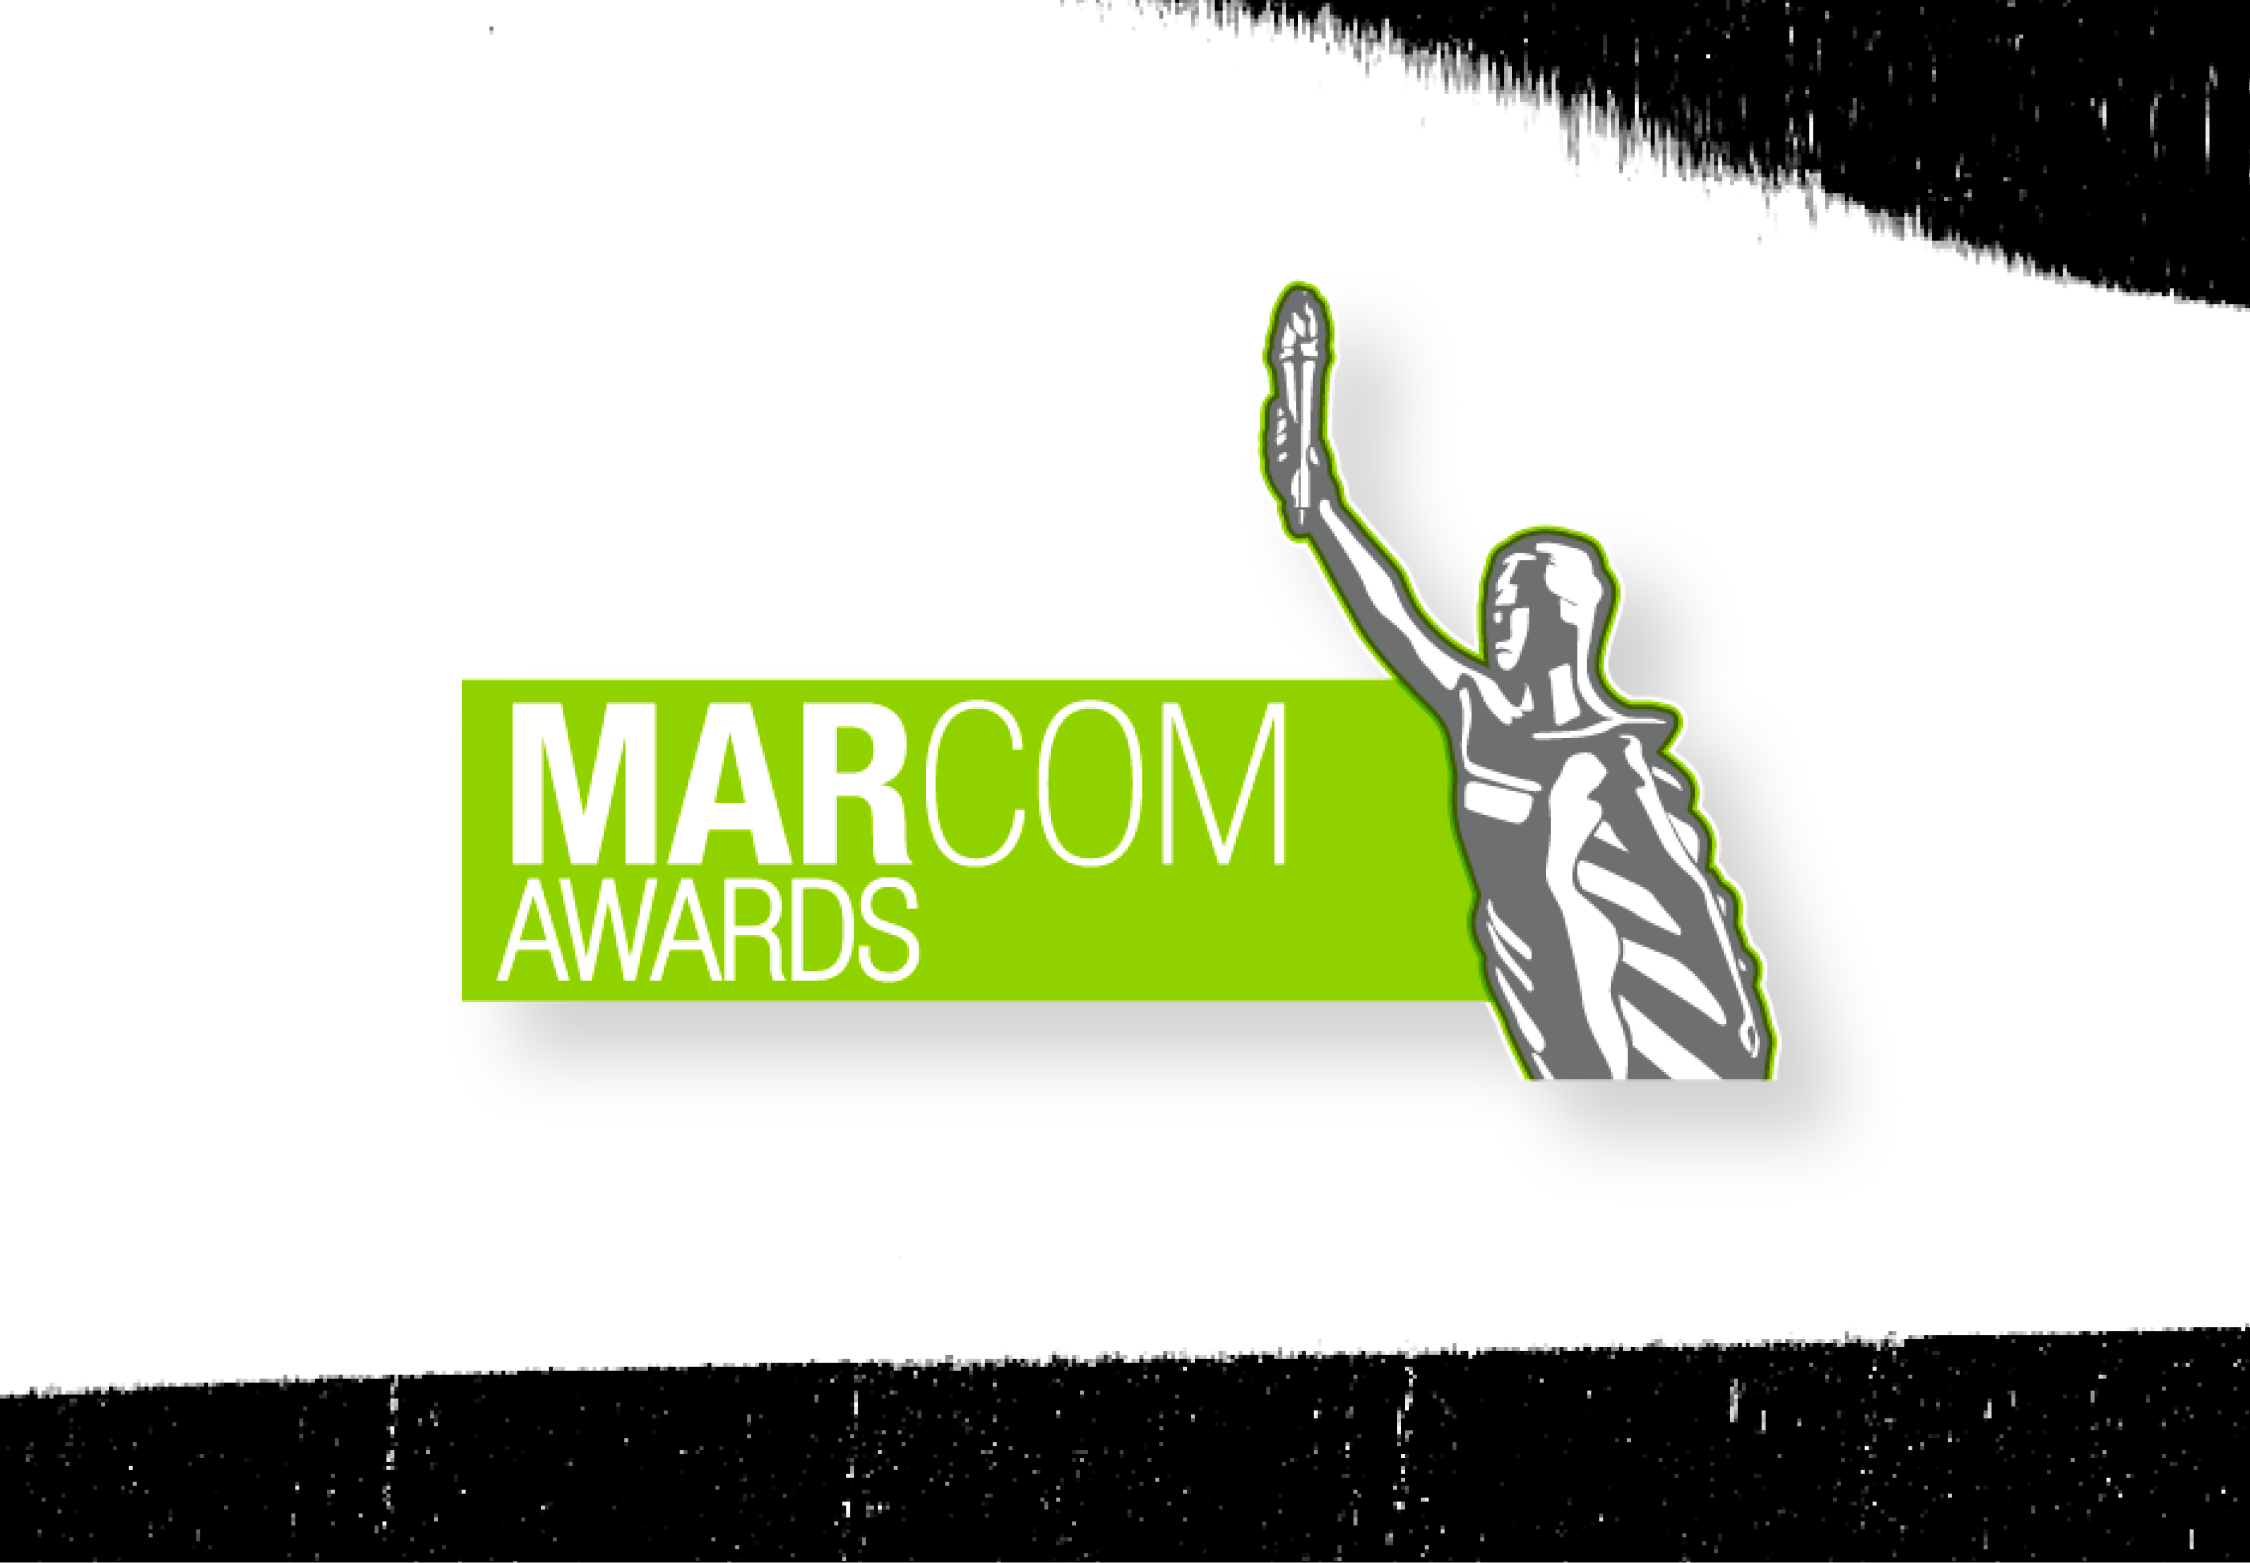 MarCom Awards Graphic